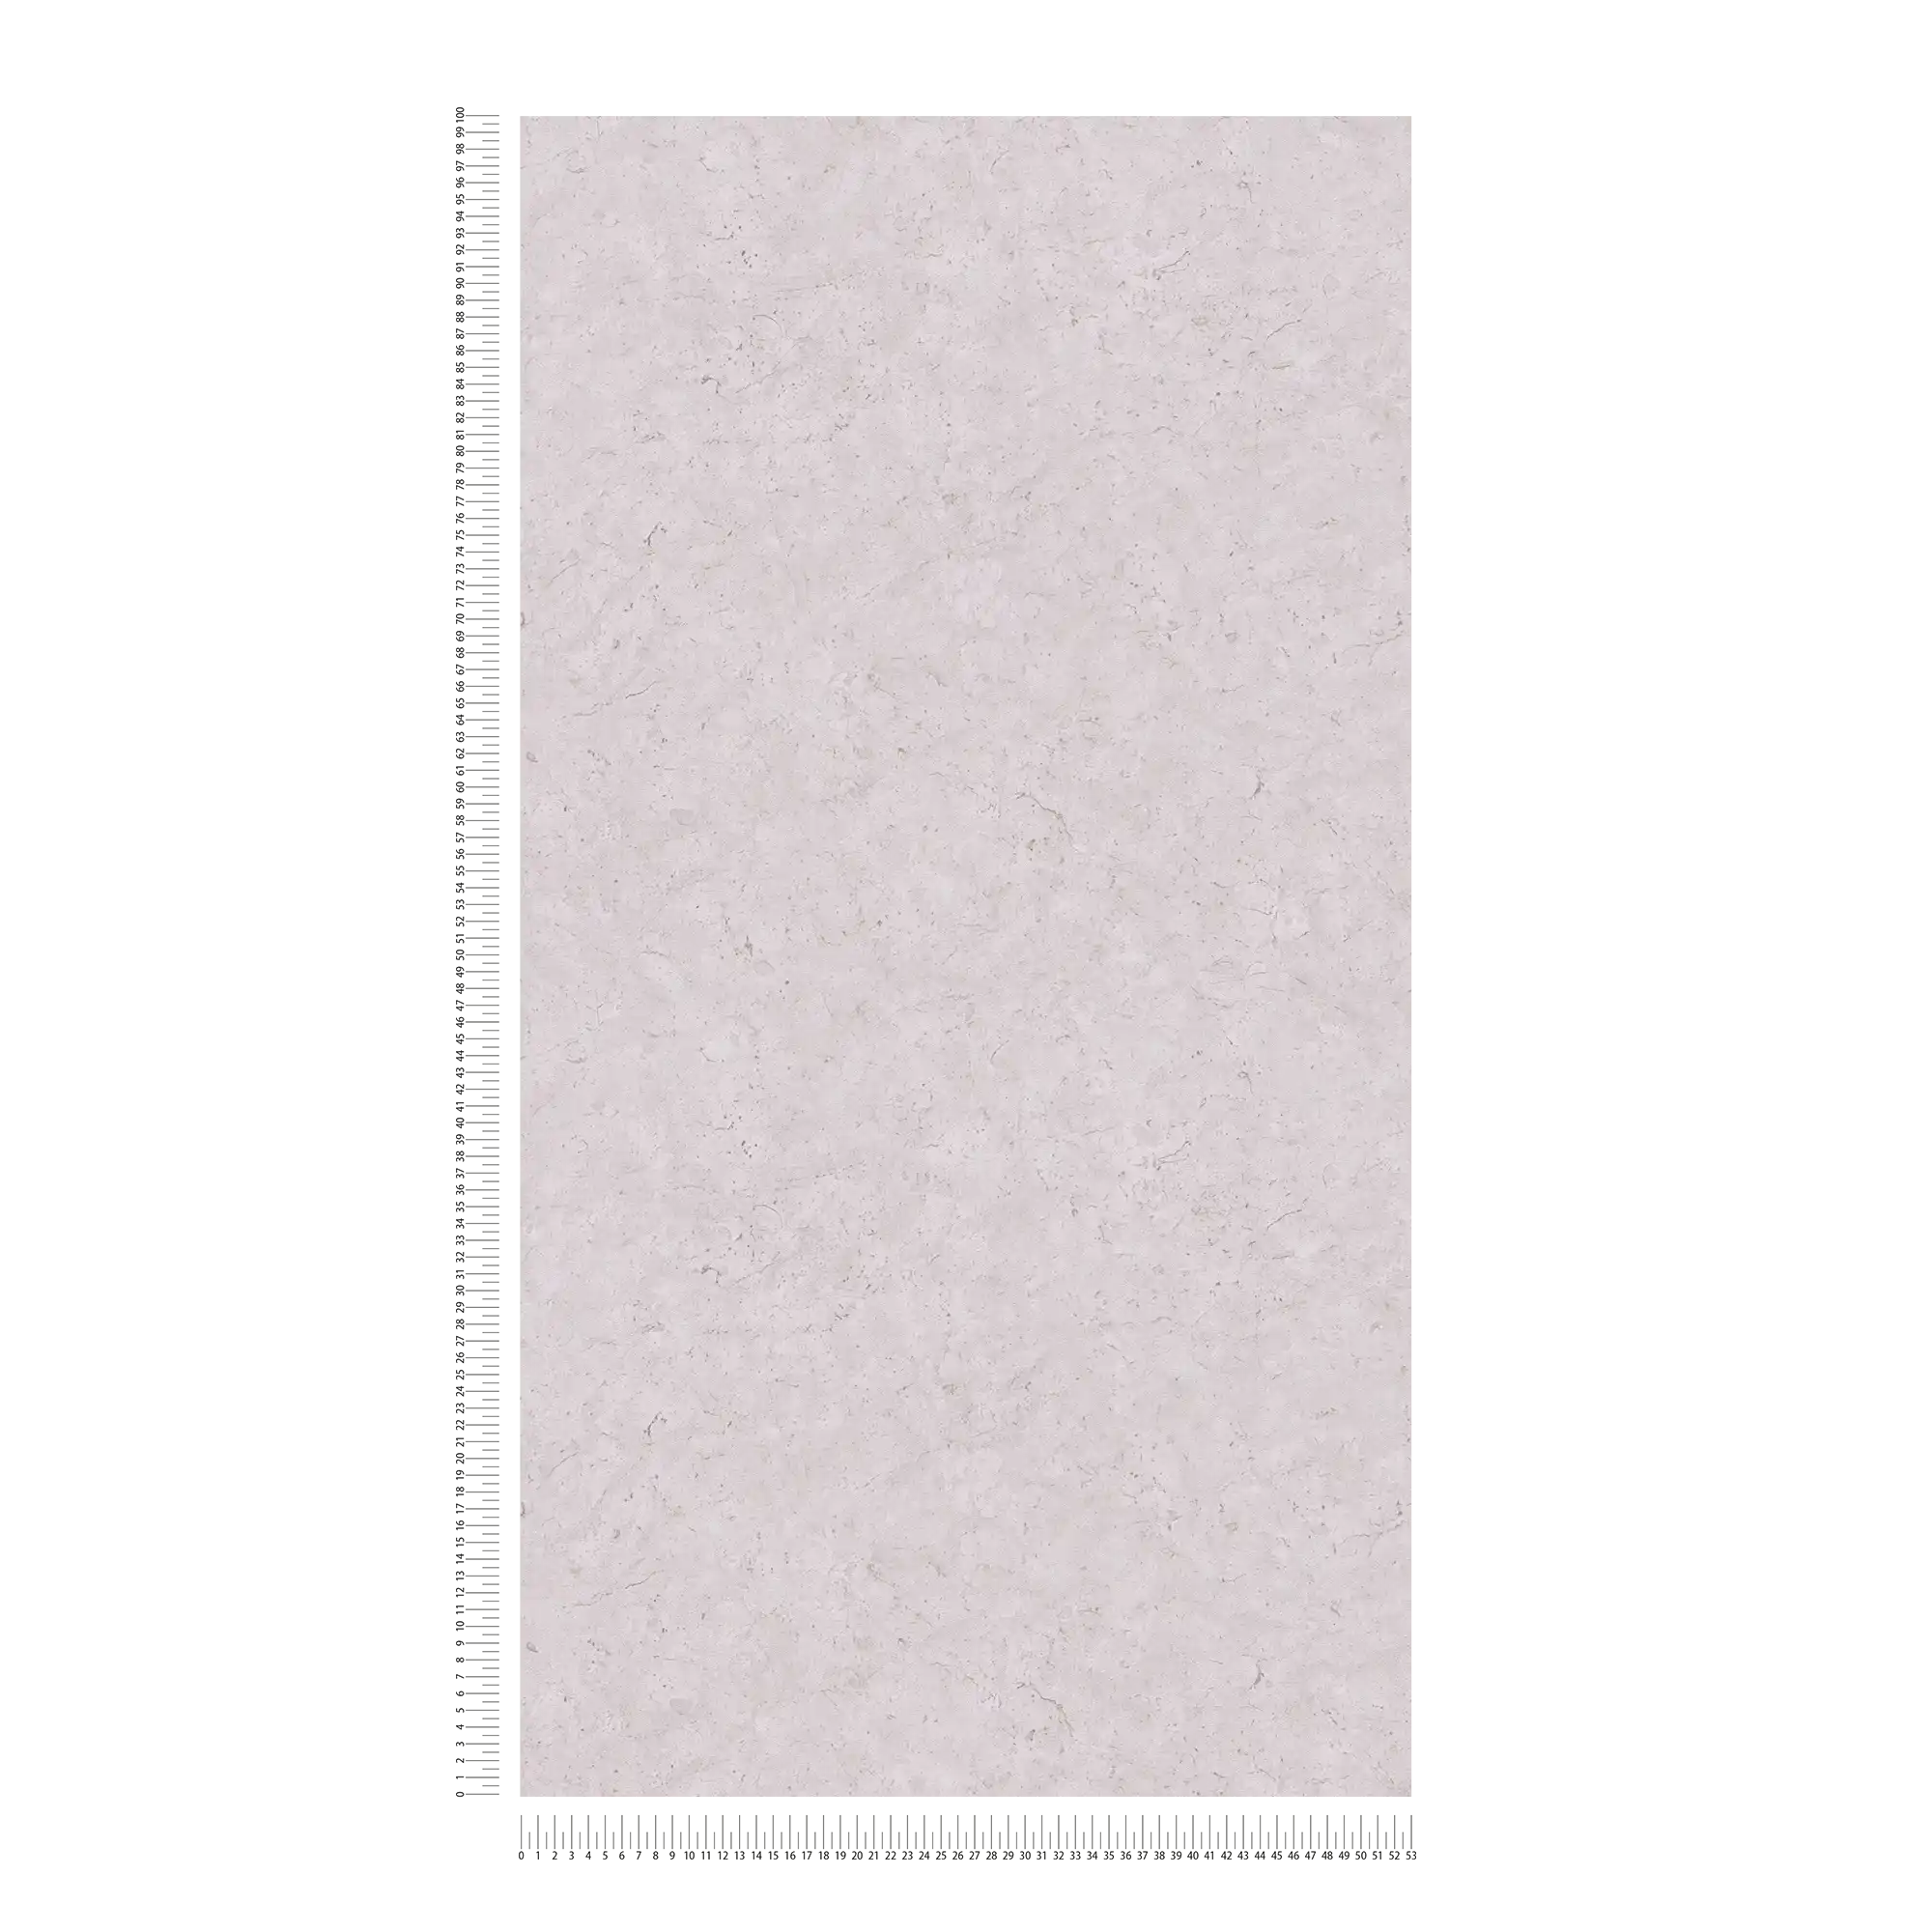             Carta da parati in tessuto non tessuto a tinta unita con effetto cemento - grigio
        